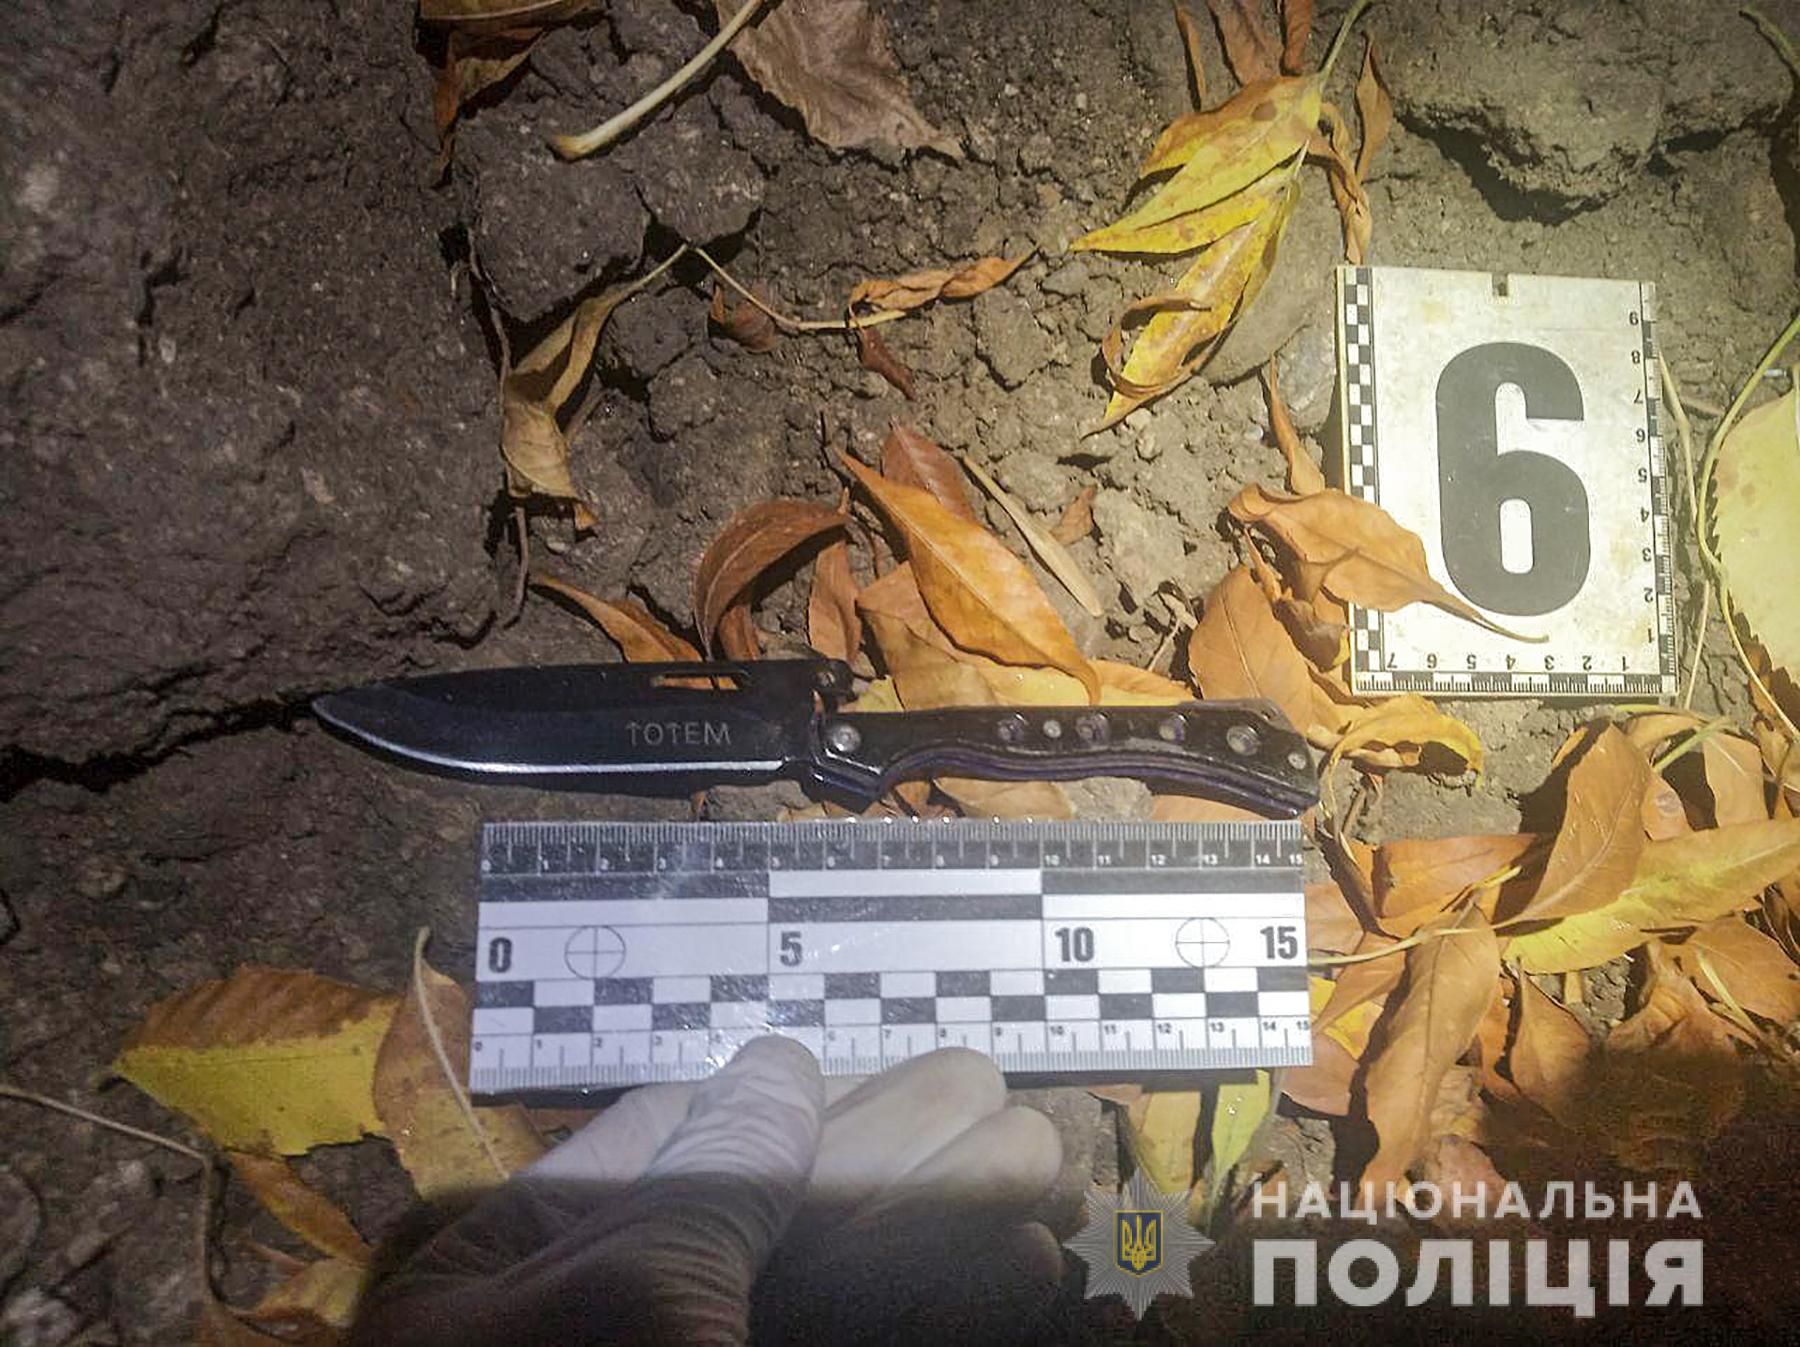 20-летнего парня в Запорожье ножом пырнул ранее судимый за тяжкие преступления: подробности